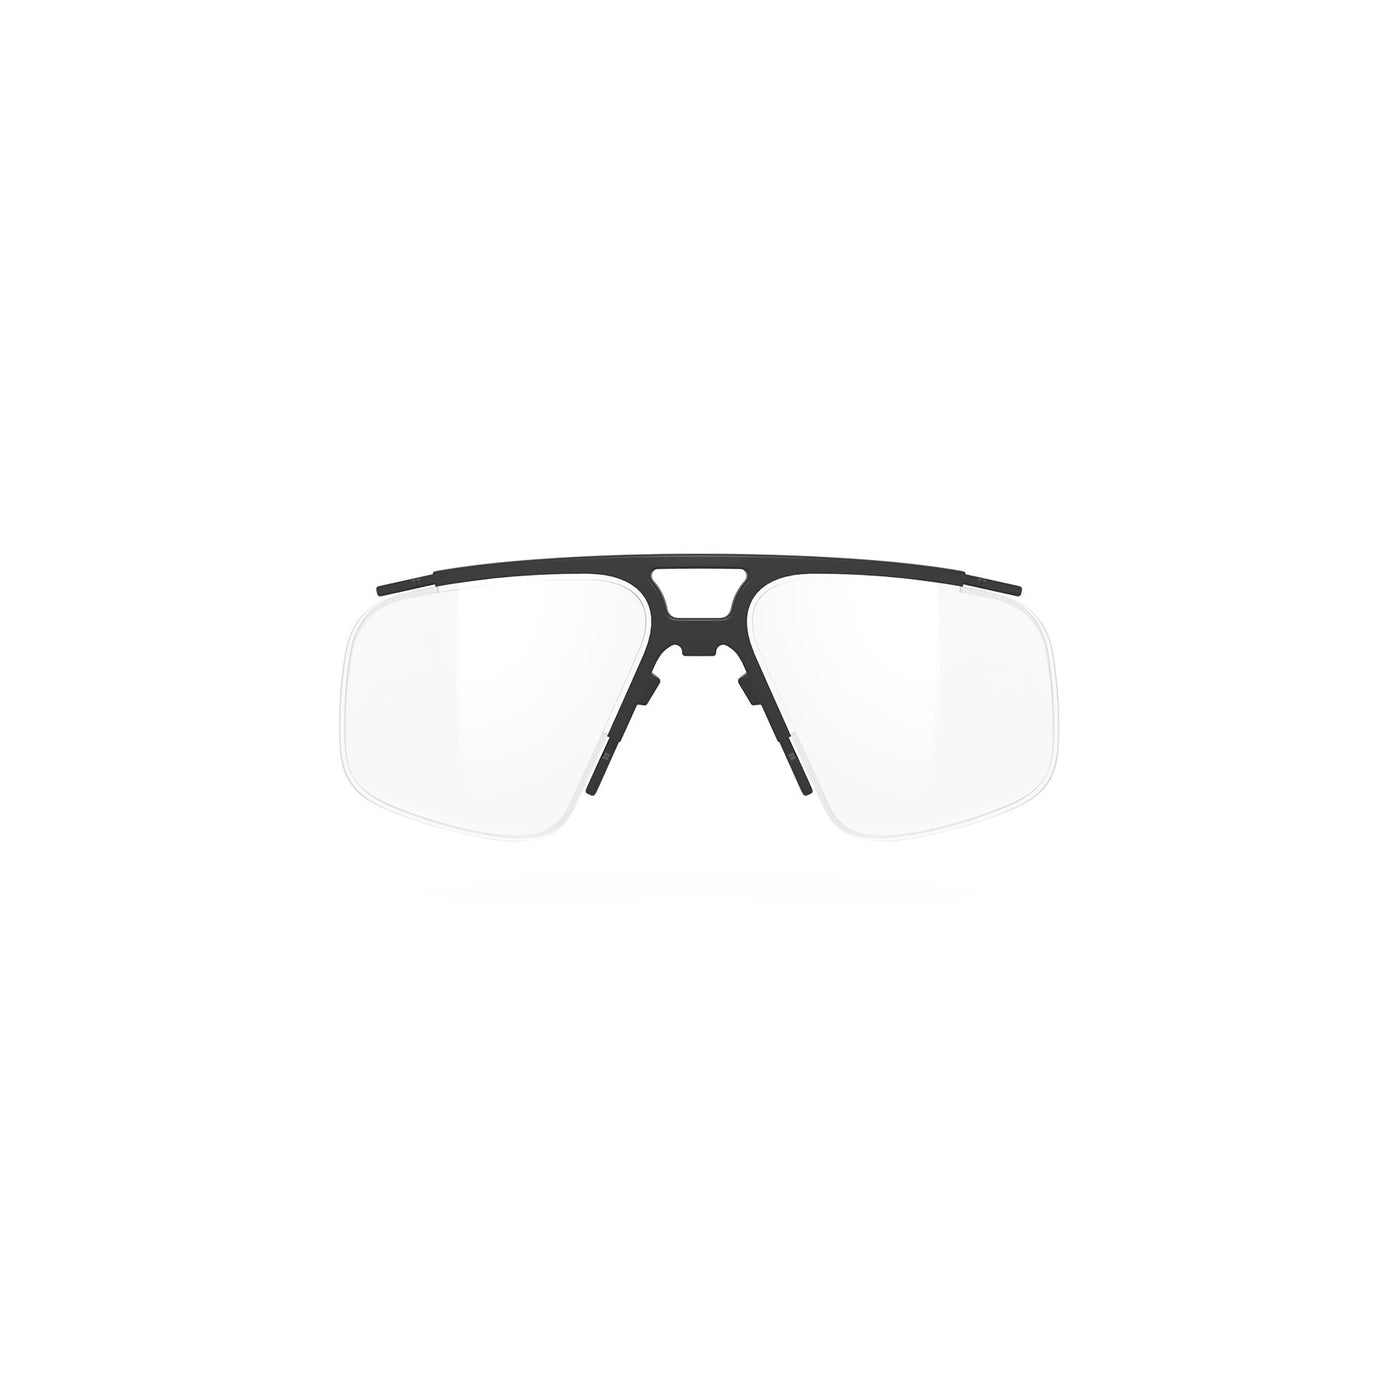 Semi Rimless Rx Insert for Shield Sunglasses